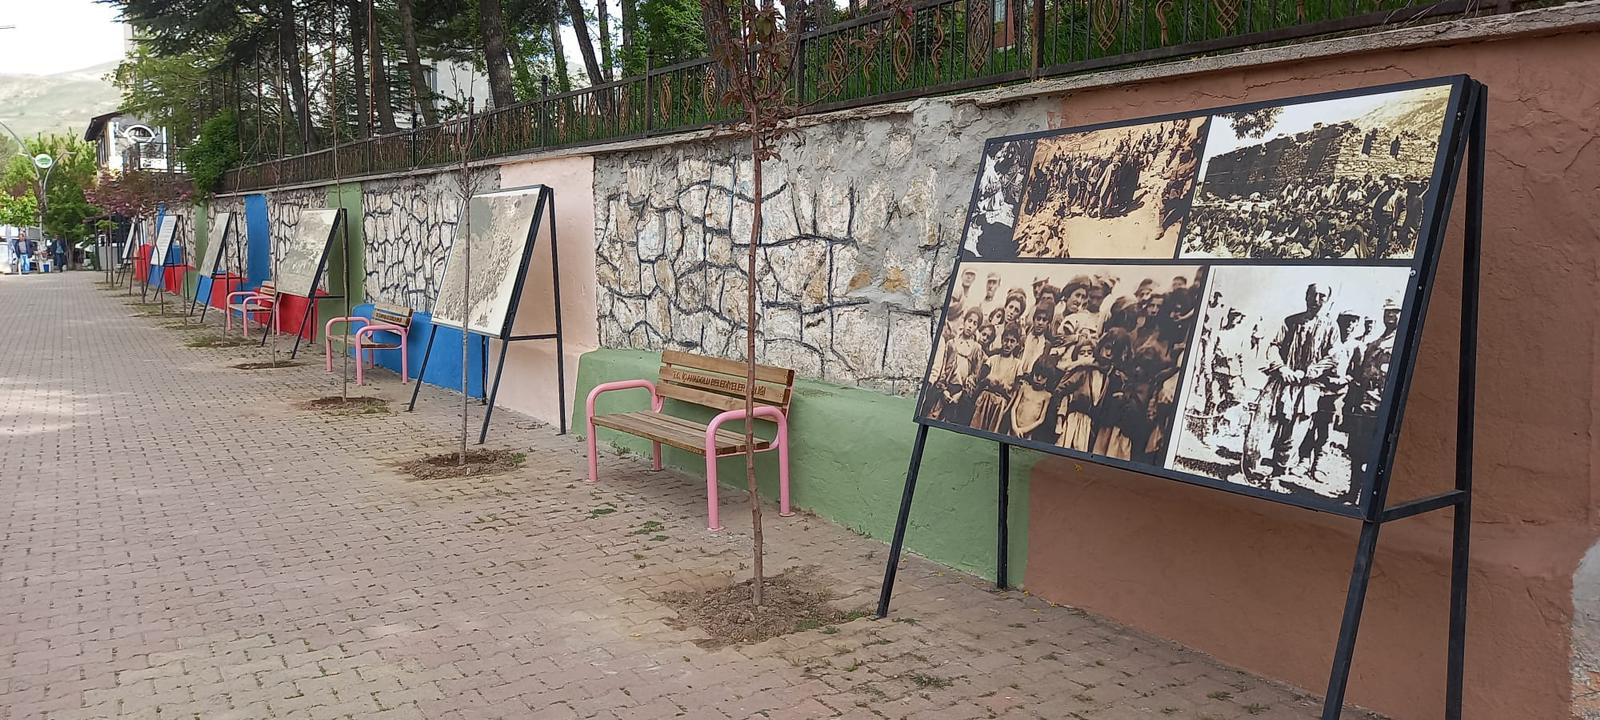 Hozat’taki 1938 Duvarı kaldırıldı